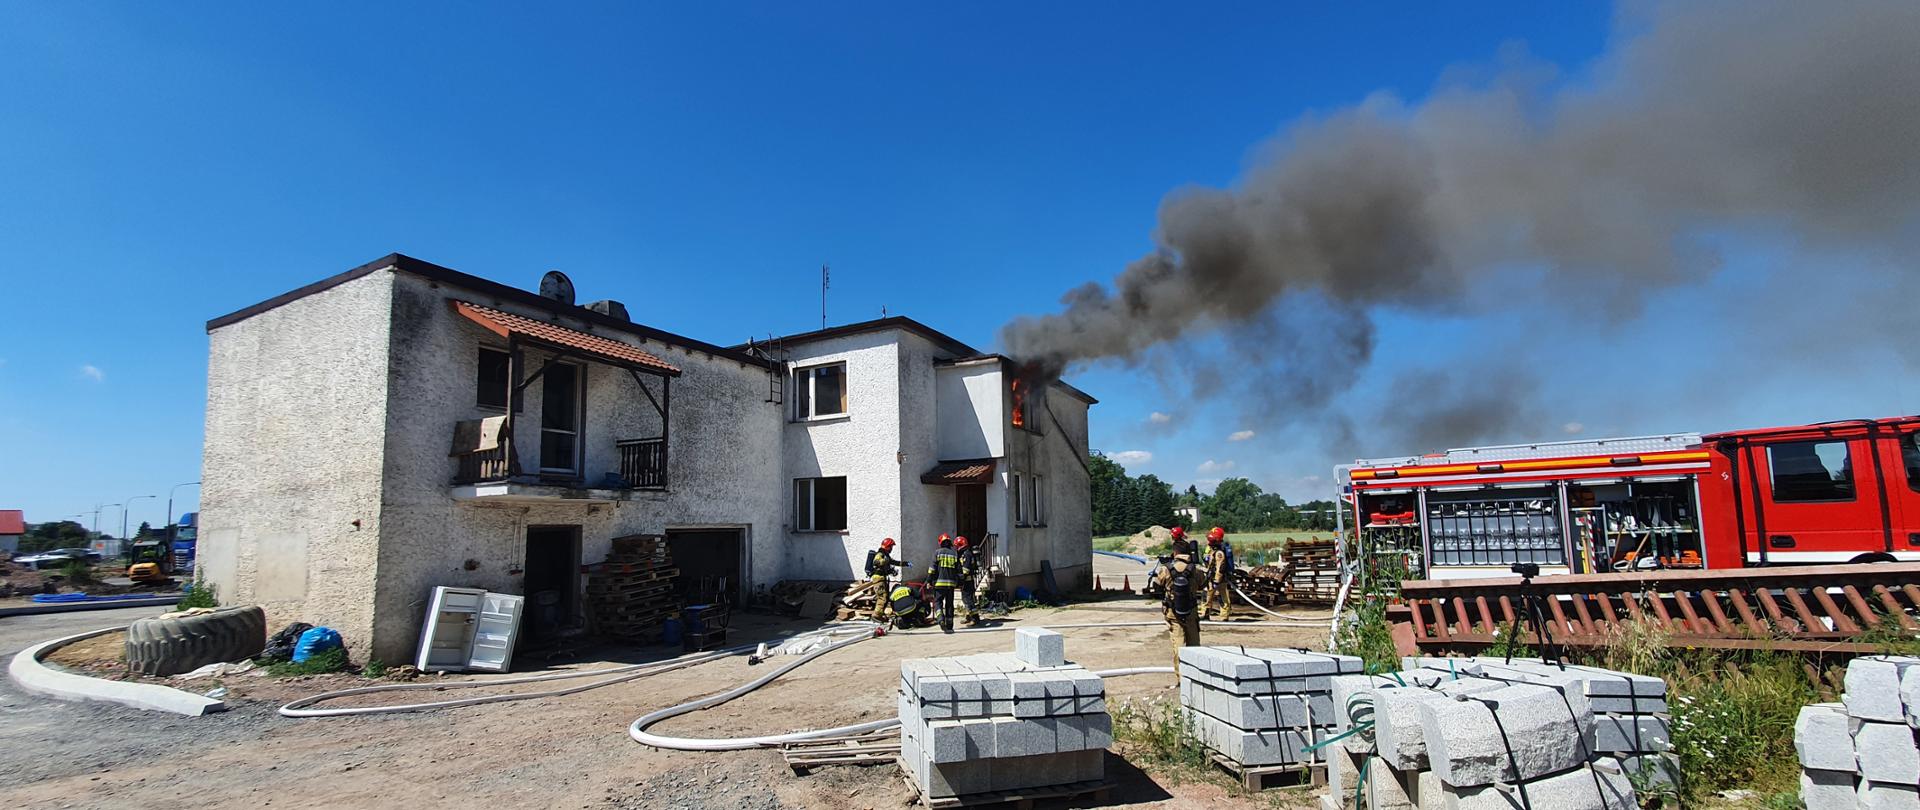 Ćwiczenia z gaszenia pożarów wewnętrznych domu jednorodzinnego